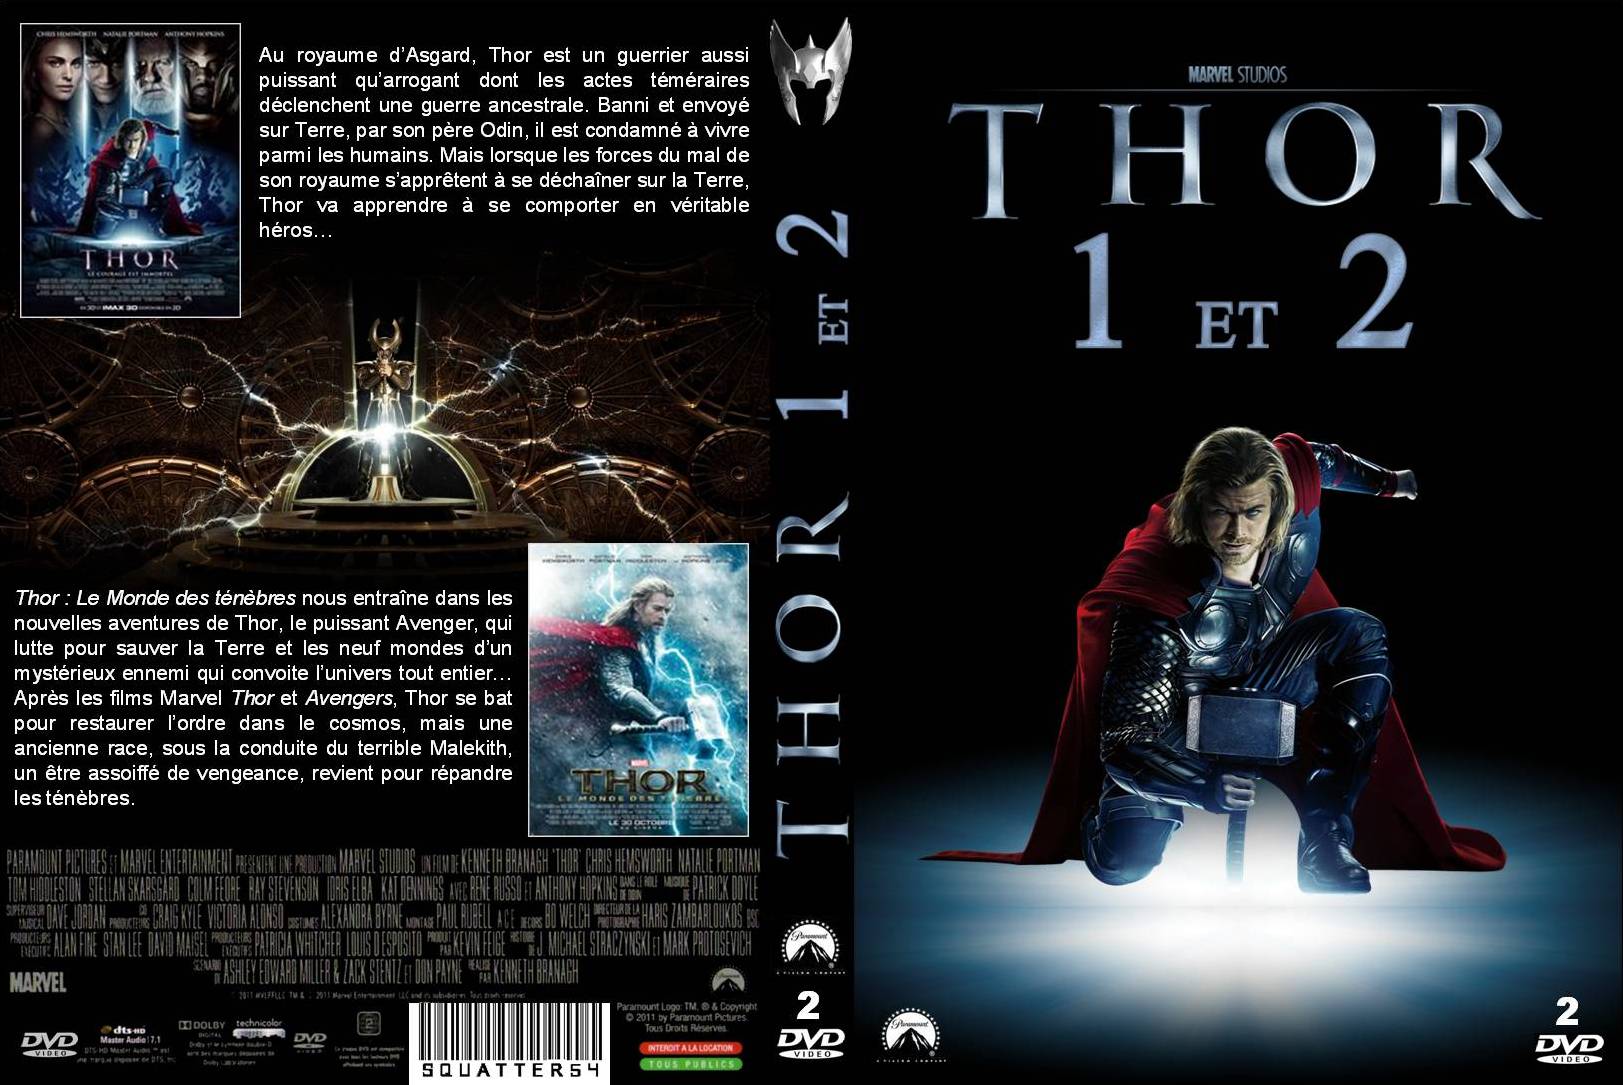 Jaquette DVD Thor 1 et 2 custom